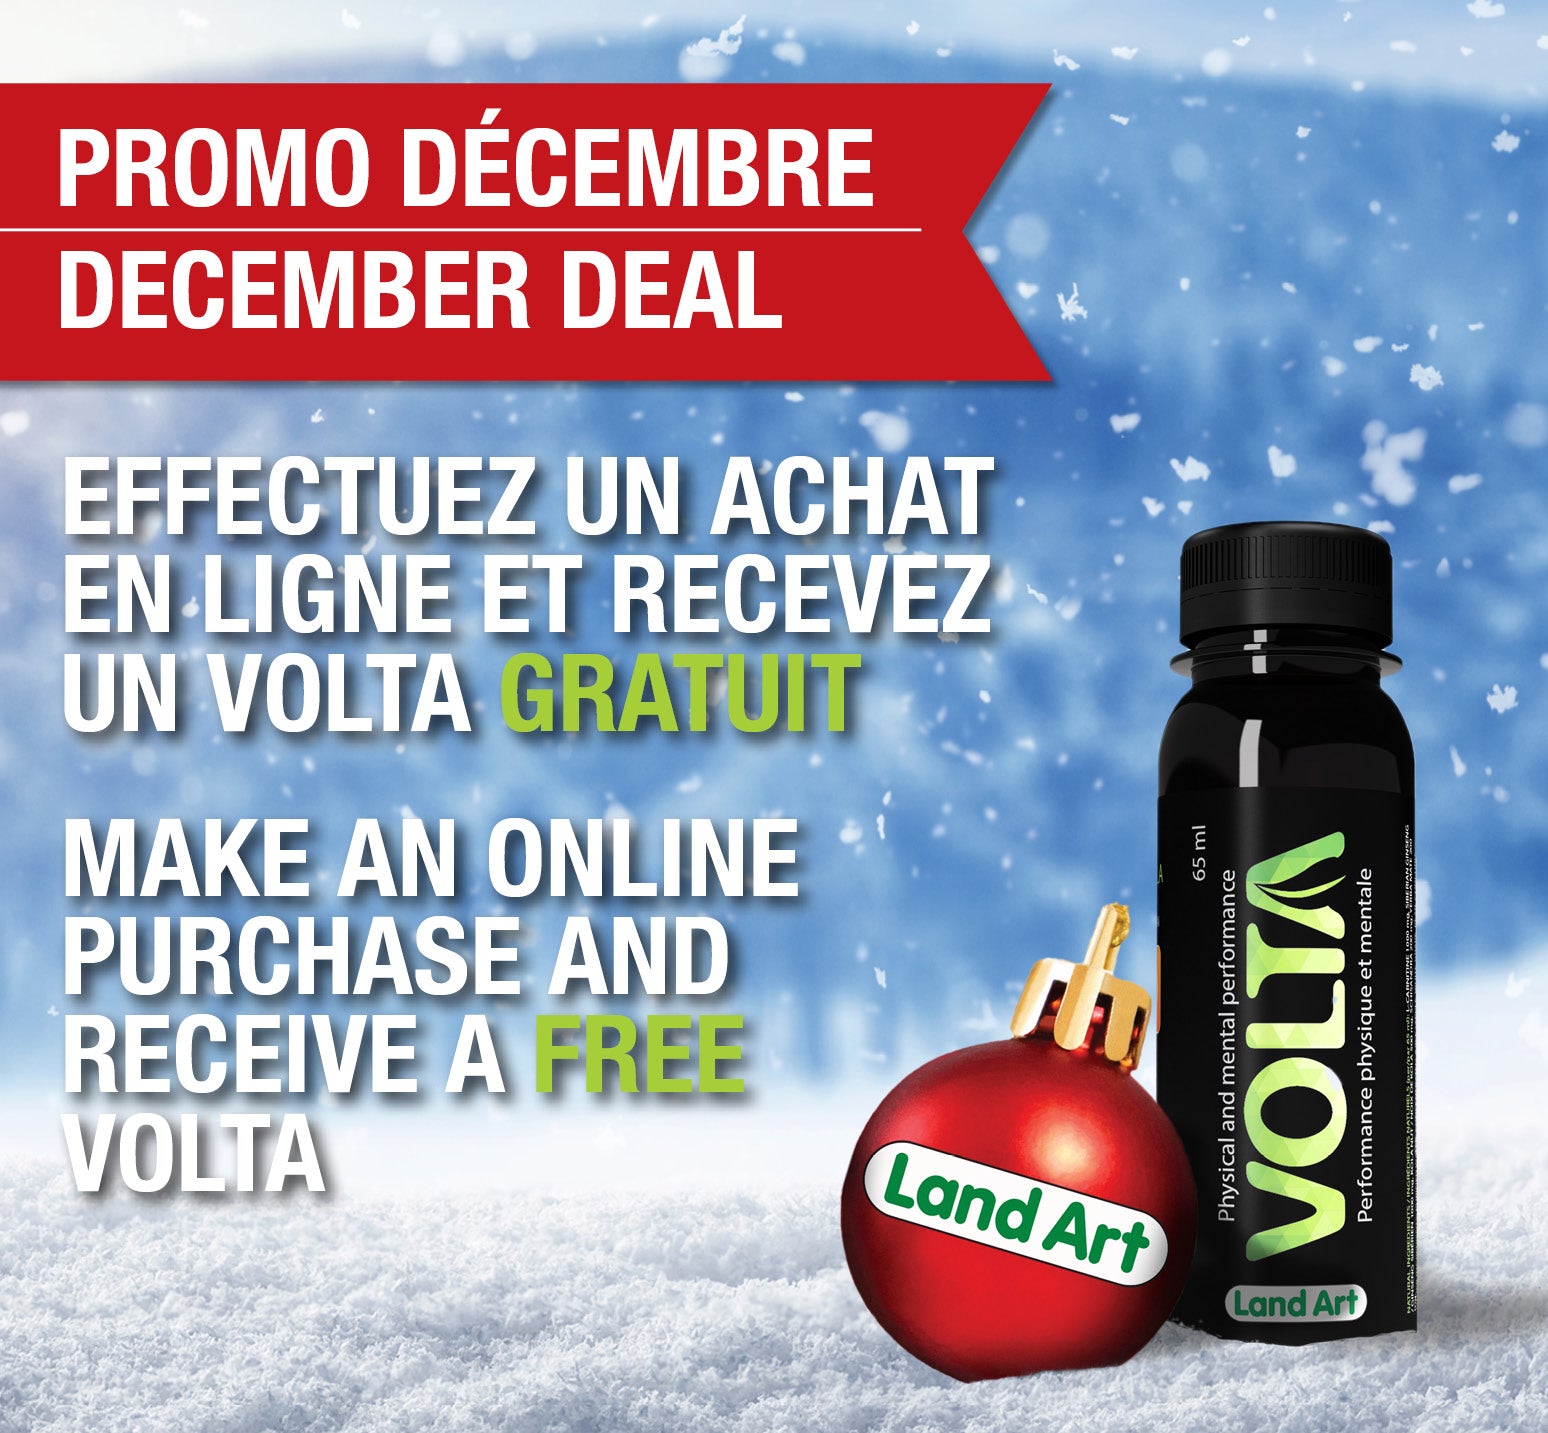 Promo décembre, effectuez un achat en ligne et recevez un volta gratuit. December deal, make an online purchase and receive a free volta.